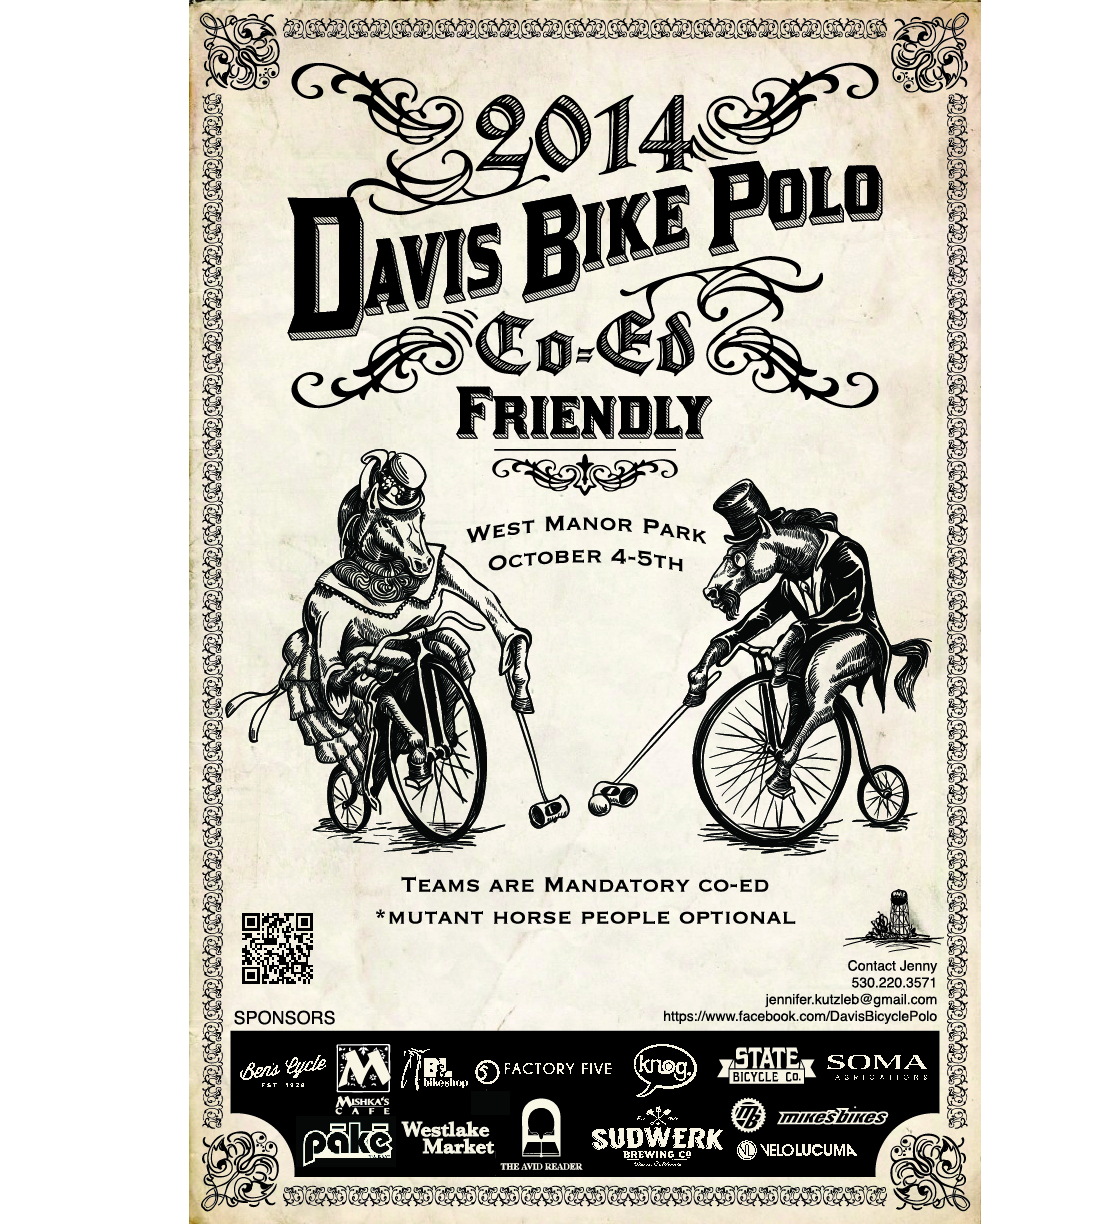 Davis bike polo friendly tournament 2014